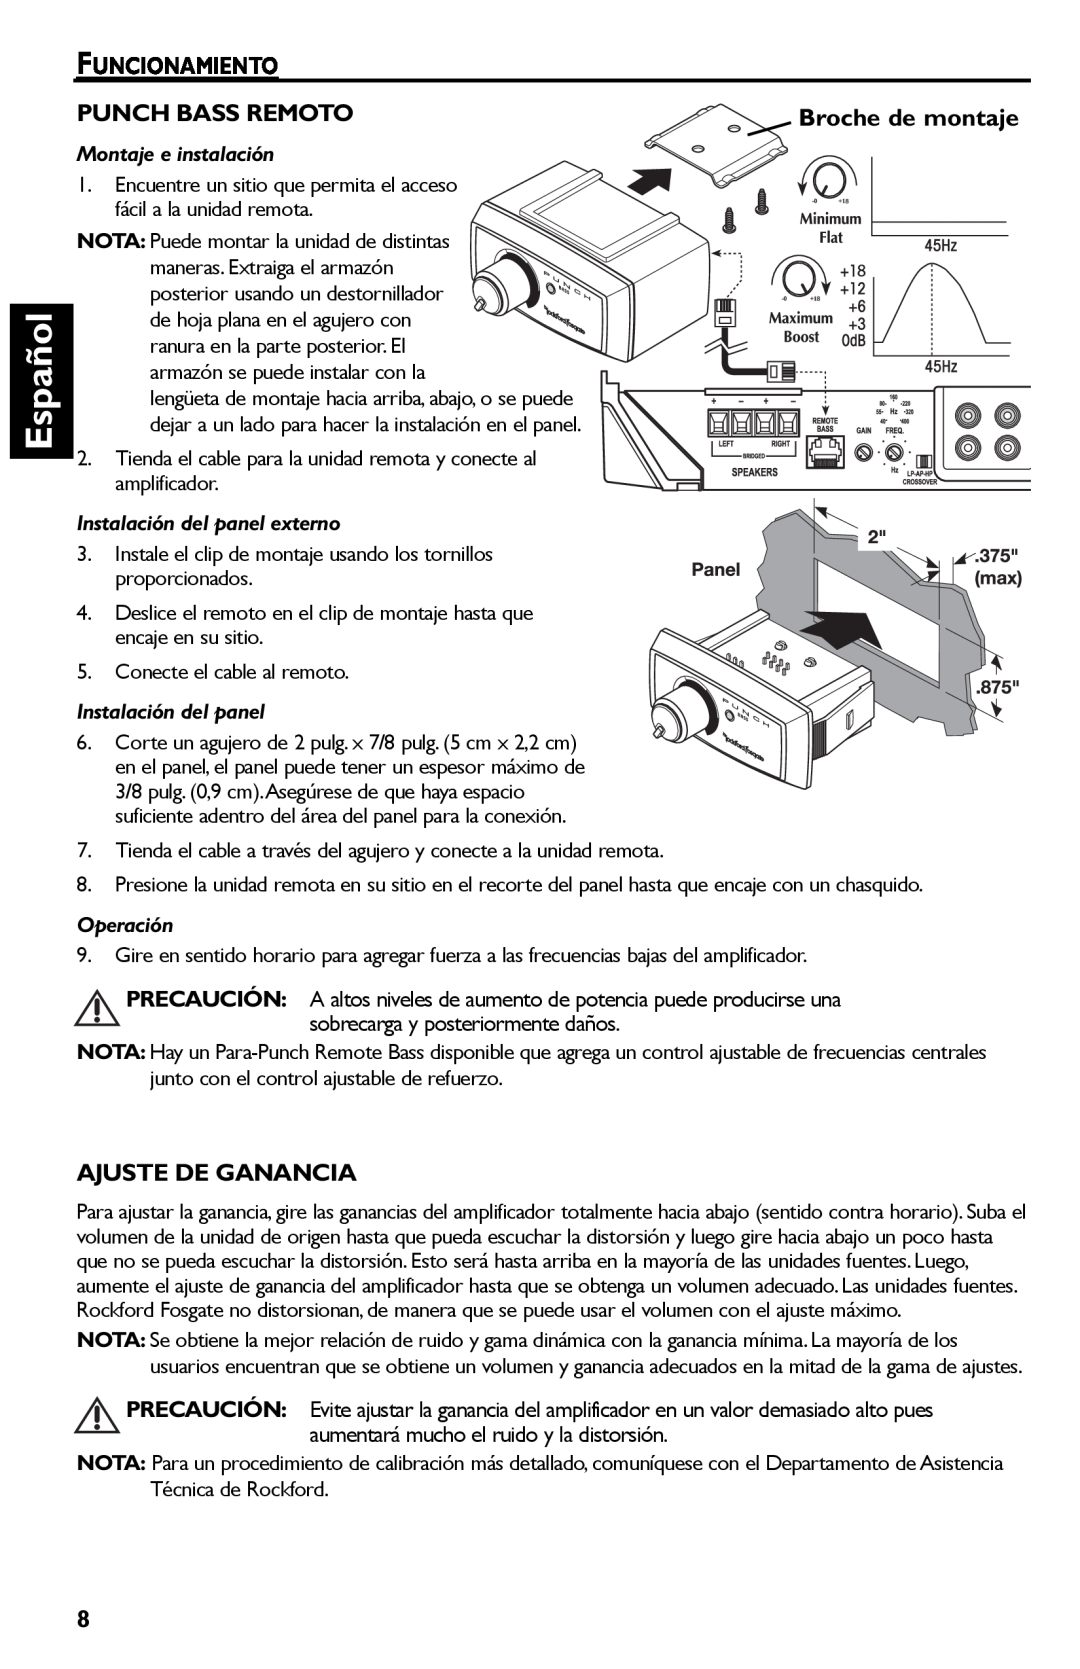 Rockford Fosgate Punch 45 manual Español, Montaje e instalación, Instalación del panel externo, Operación 